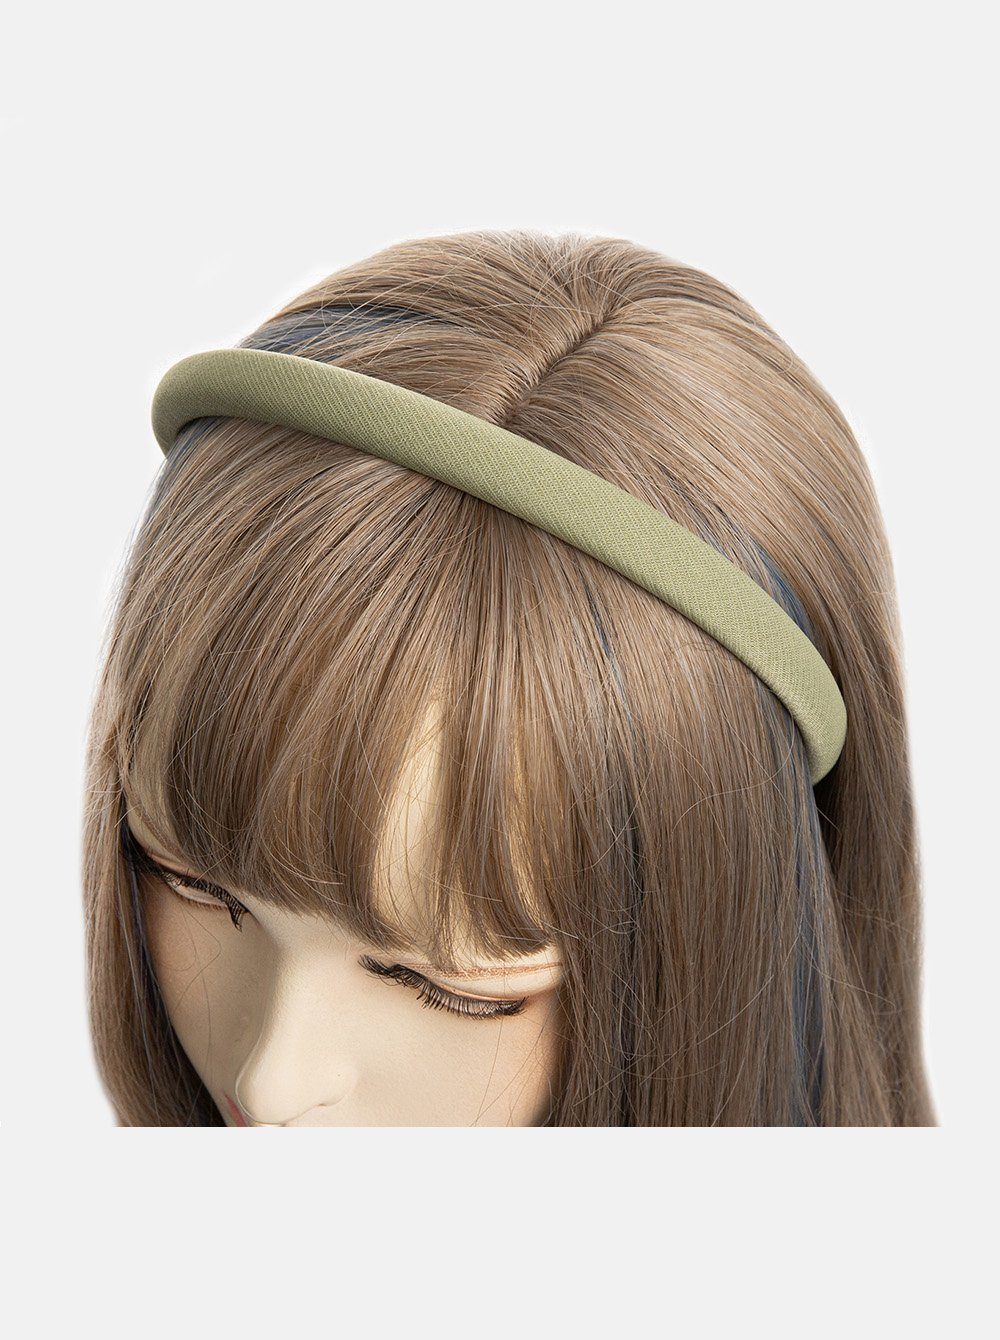 axy Haarreif Haarreif aus Stoff mit feinen Metallicfäden, gepolstertes Wunderschön Stirnband Haarschmuck Graugrün